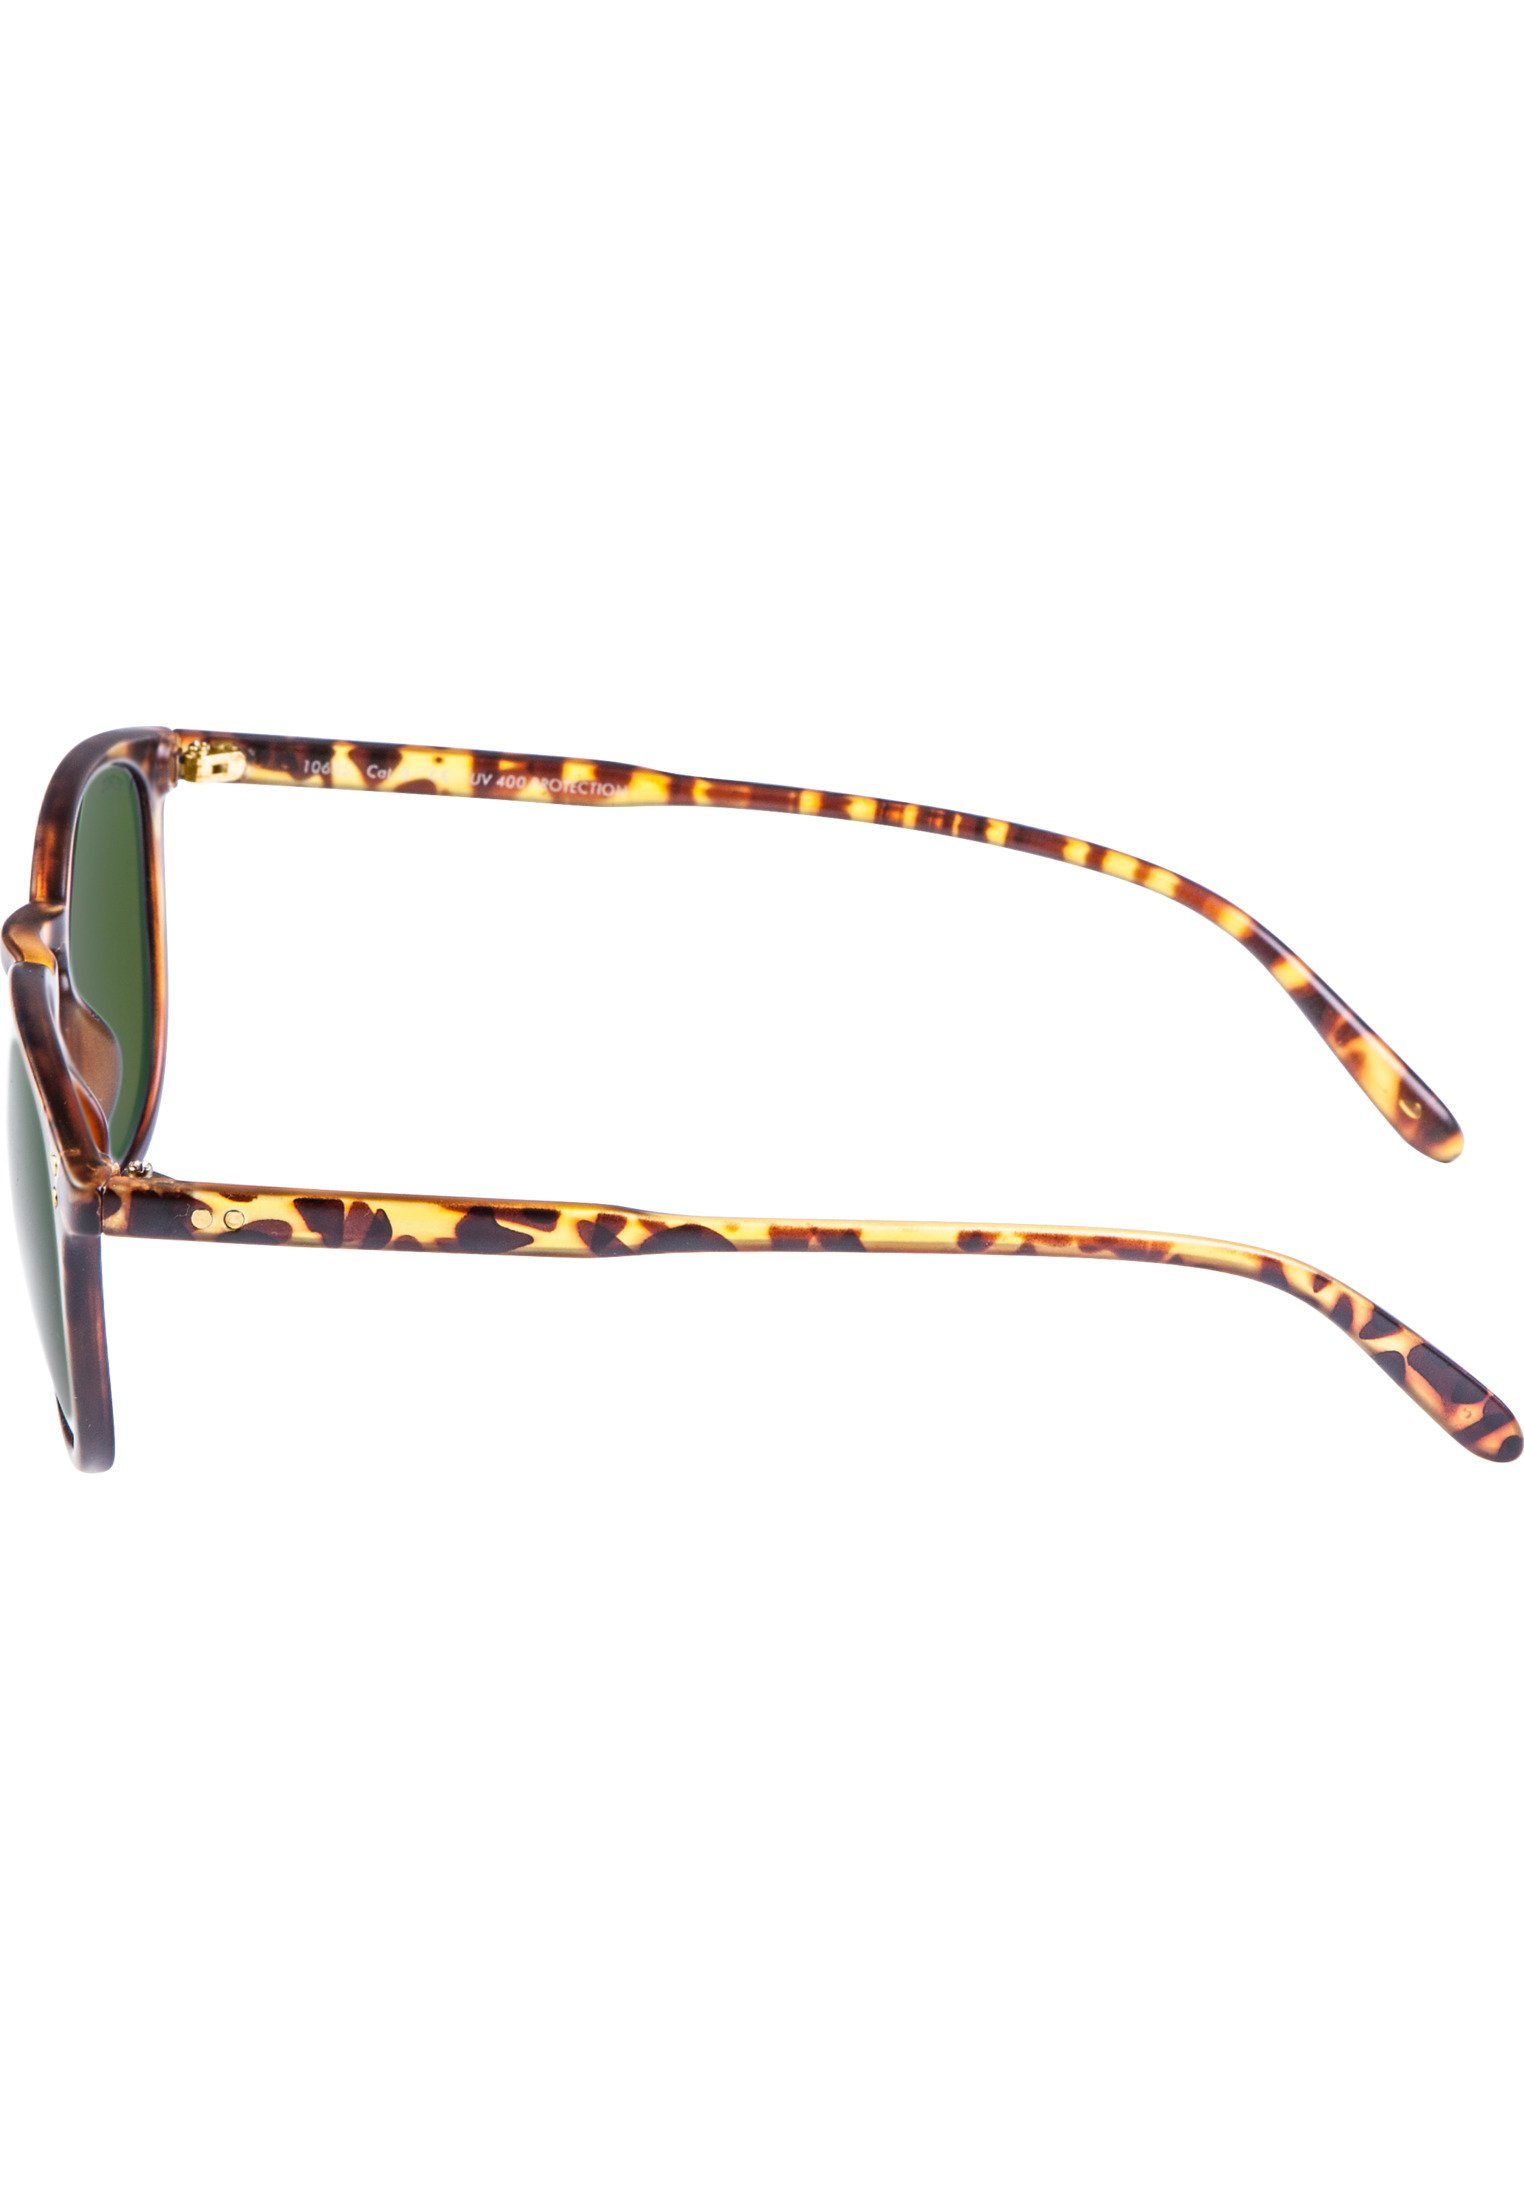 Sunglasses MSTRDS Arthur Accessoires havanna/green Sonnenbrille